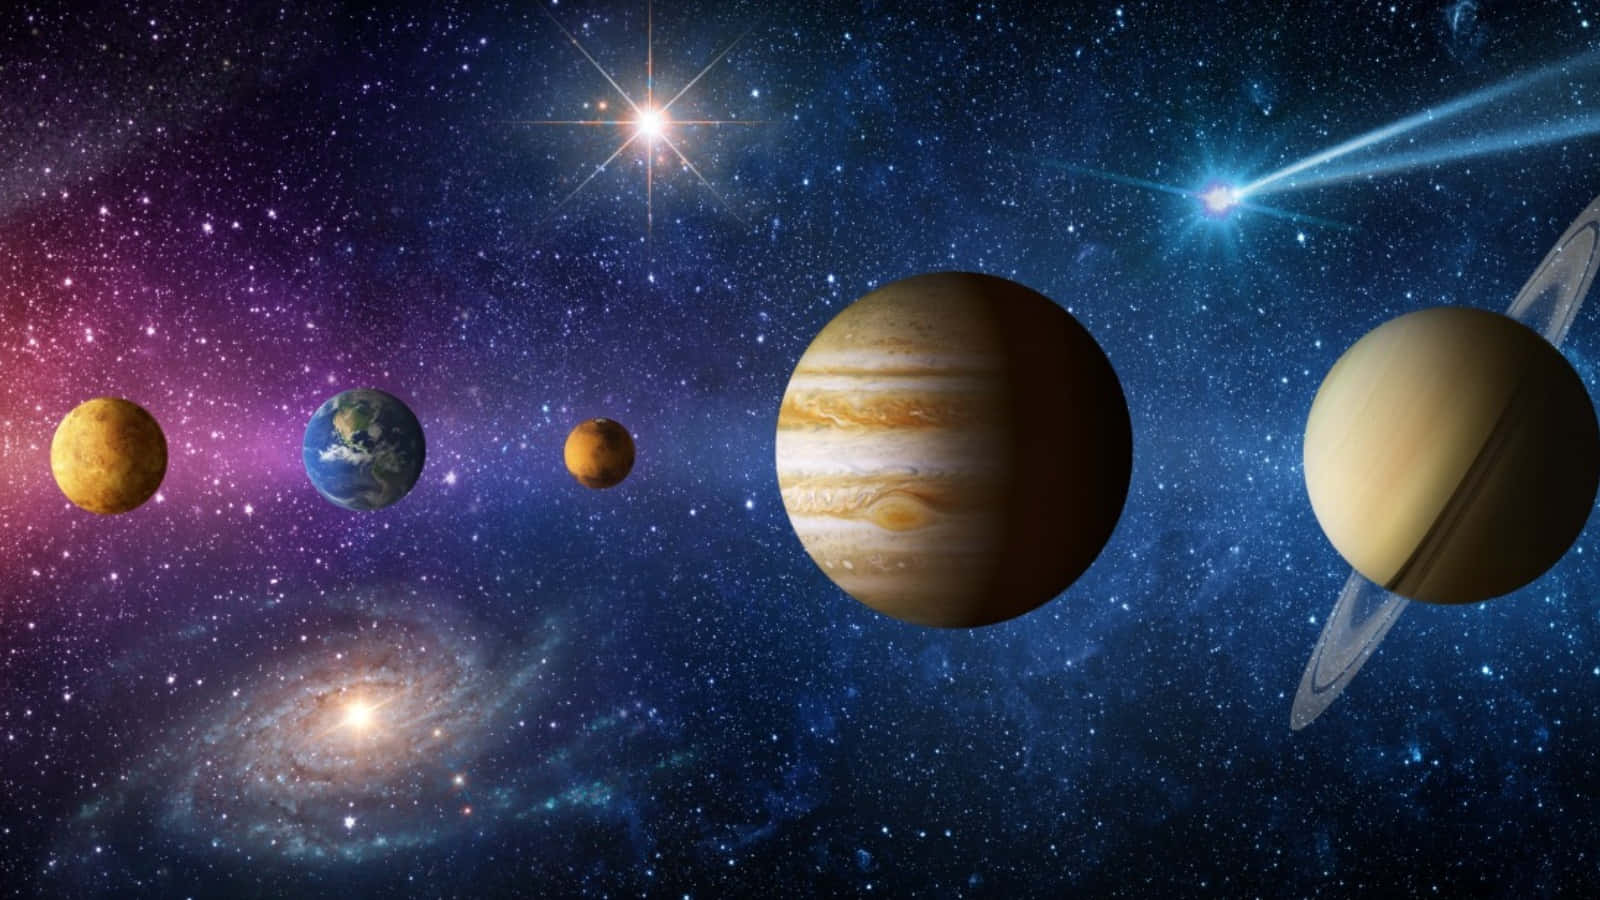 Imagende La Estructura De Los Planetas En El Sistema Solar